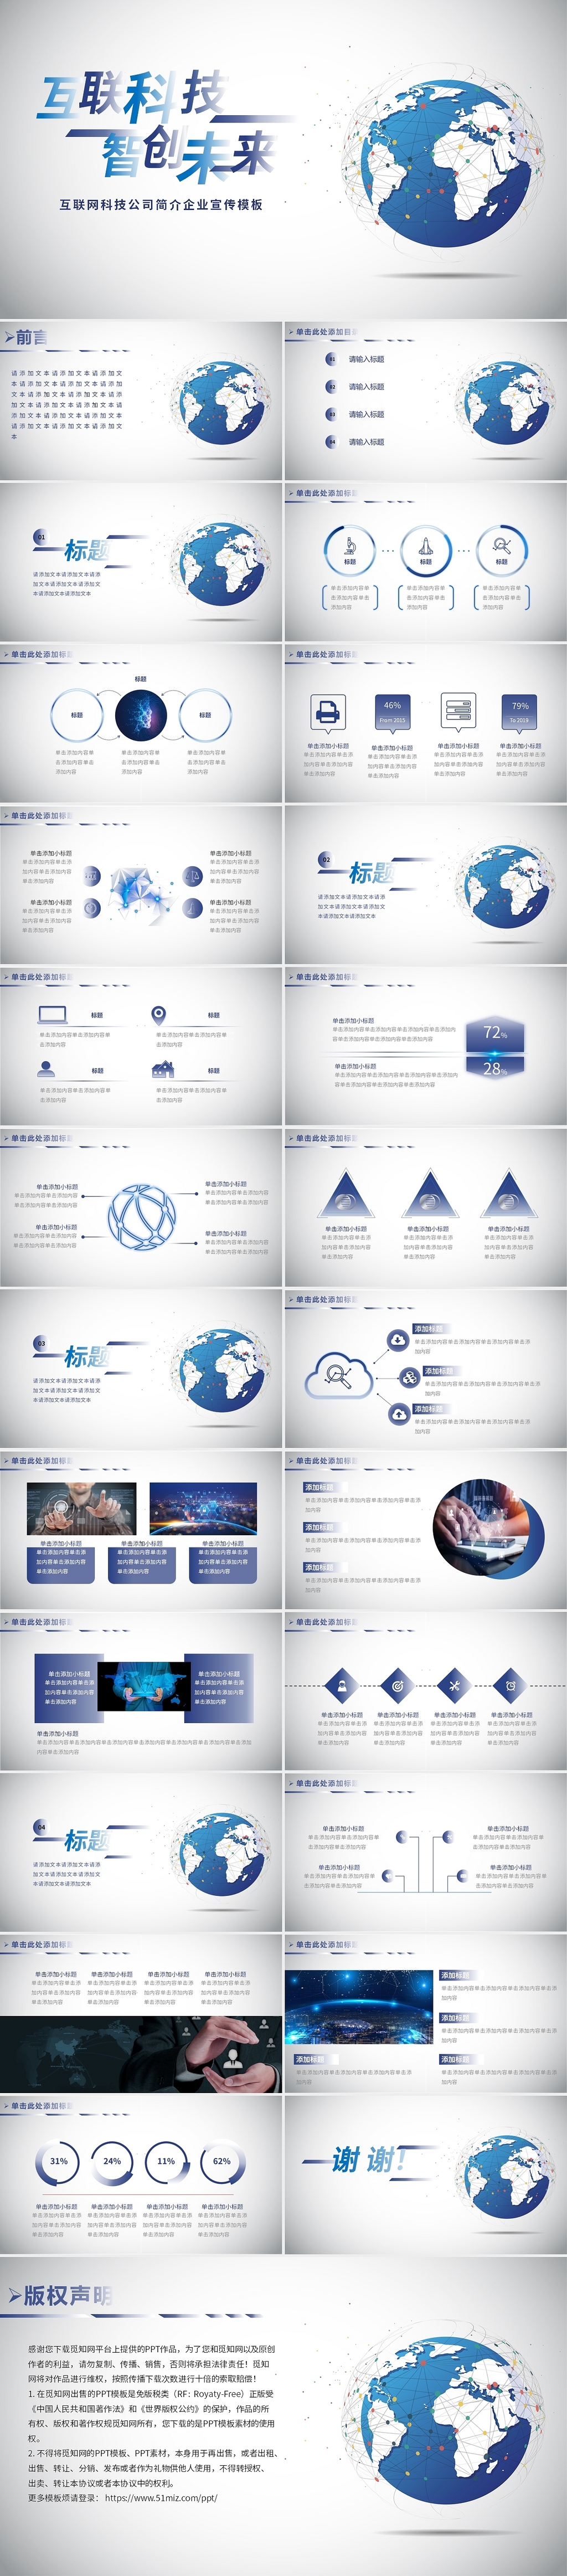 蓝灰色互联网科技公司简介企业宣传模板PPT模板